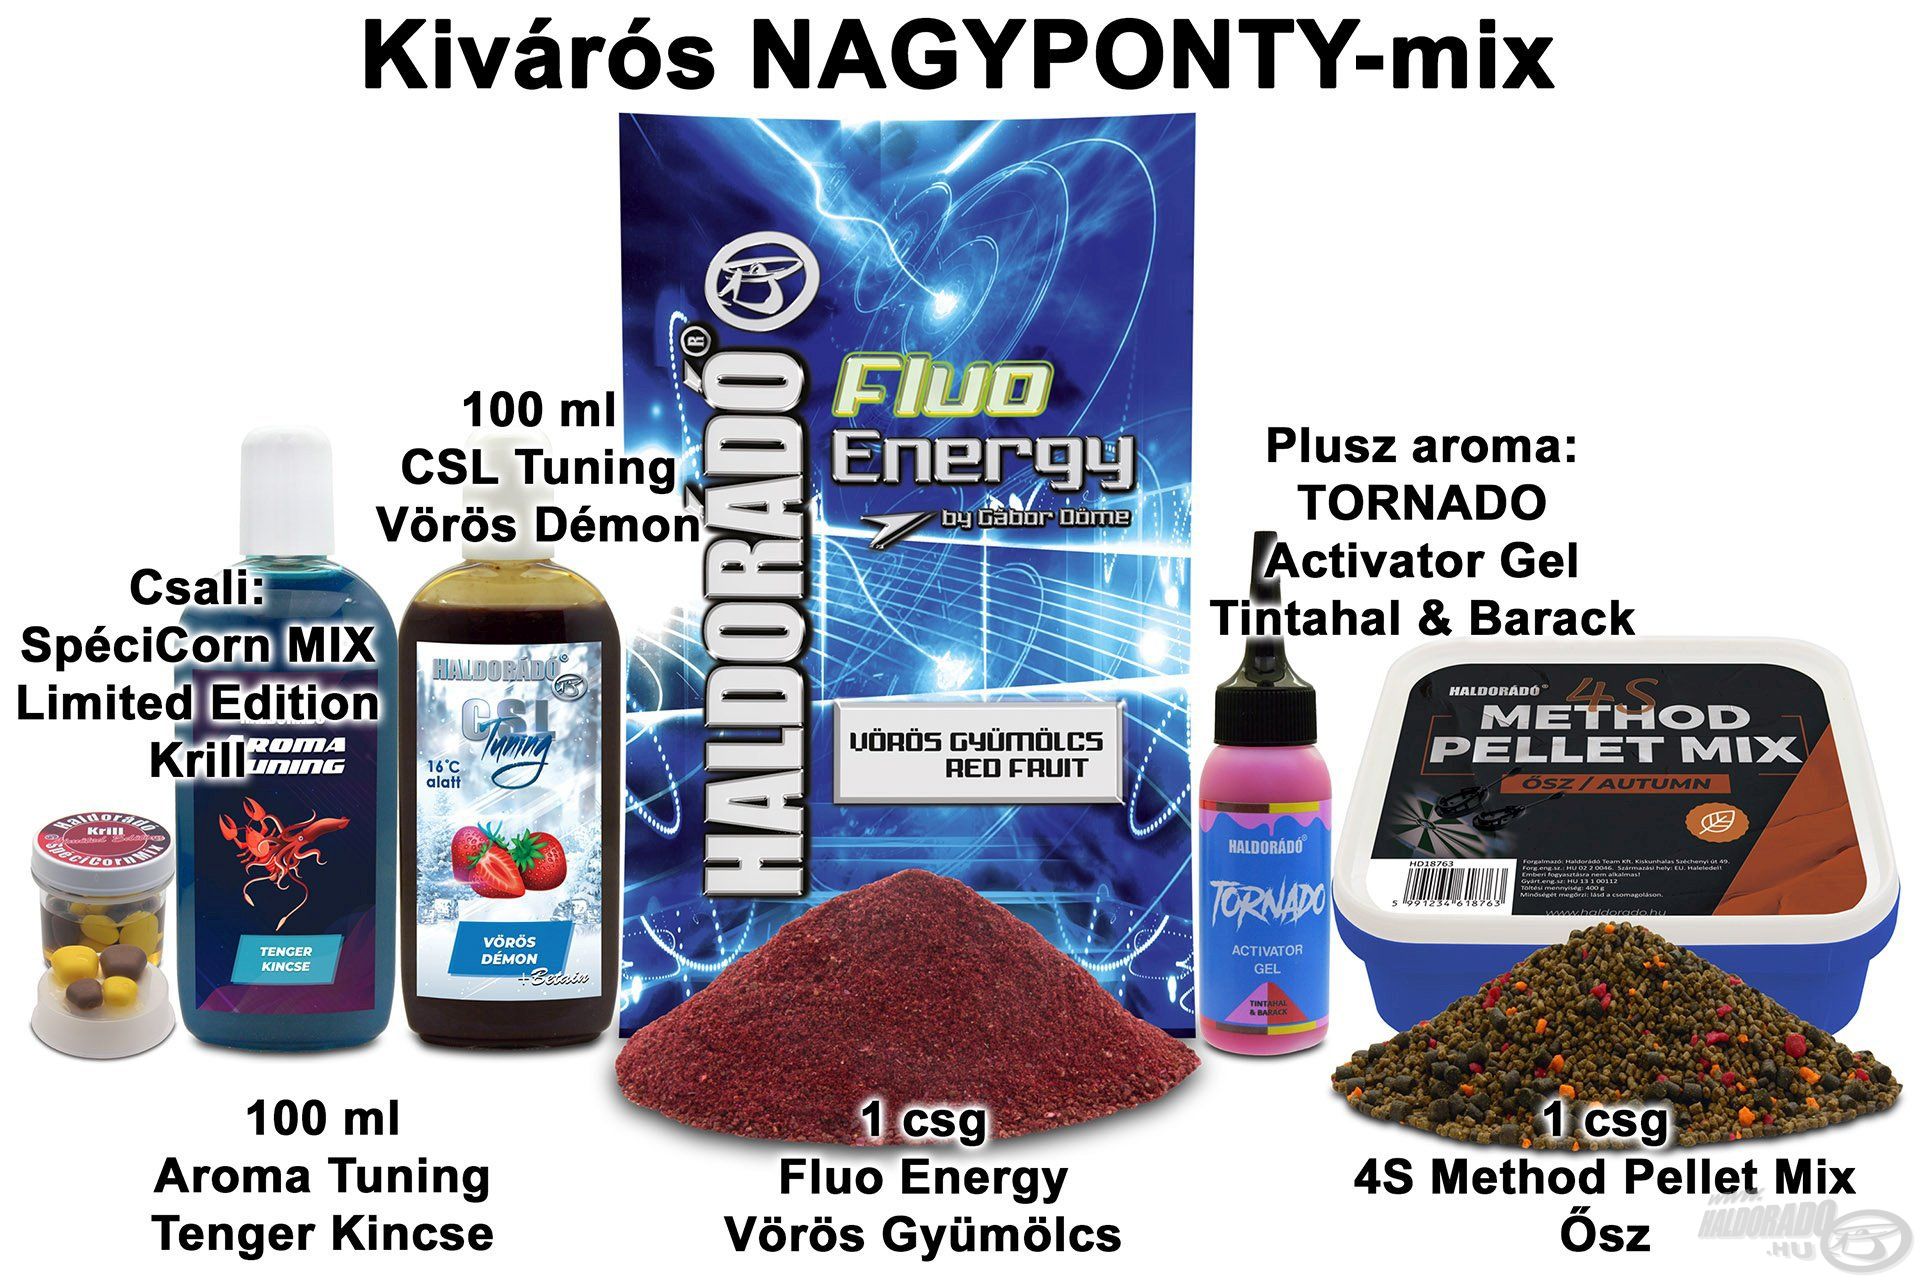 Kivárós NAGYPONTY-mix